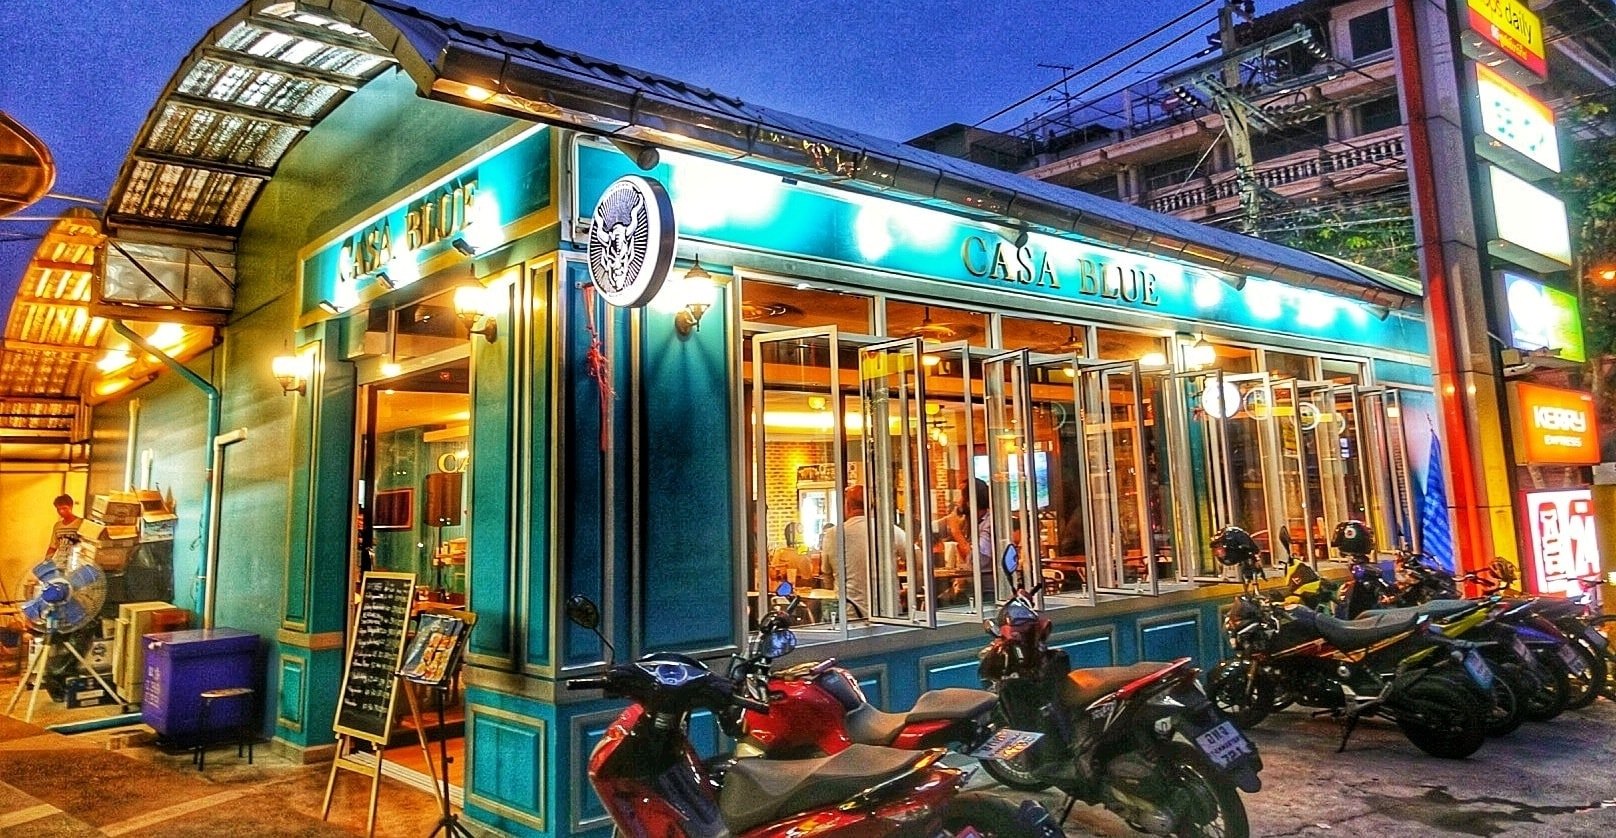 คาซ่าบลู คราฟต์บริวส์ (Casa Blue Craft Brews & Delicacies) : กรุงเทพมหานคร (Bangkok)